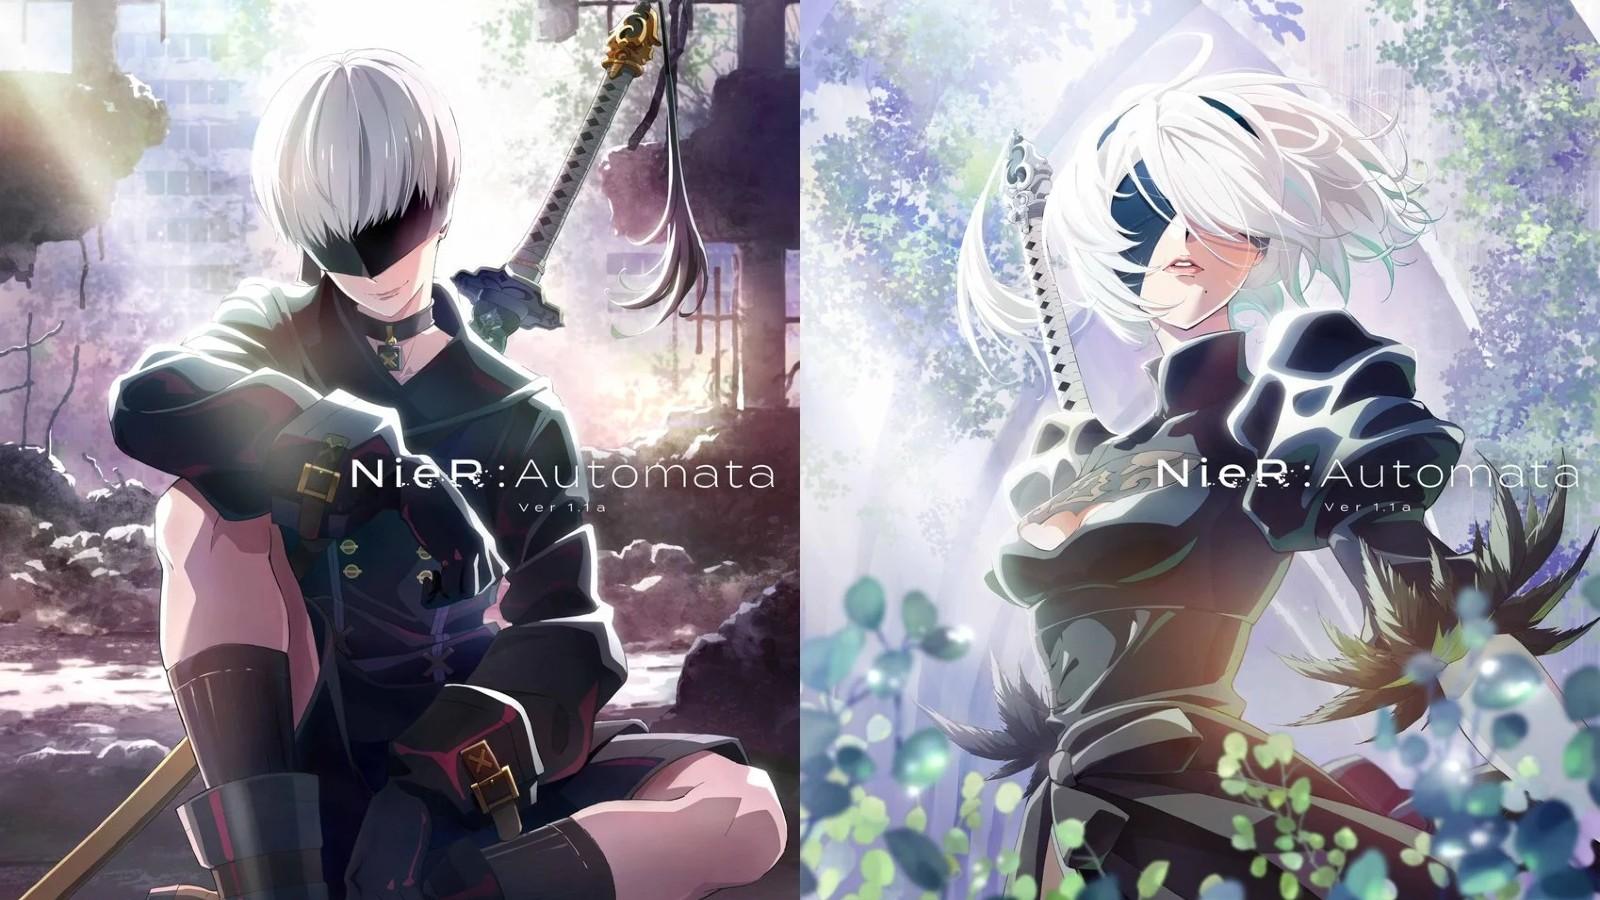 Novo teaser da anime NieR: Automata Ver1.1a